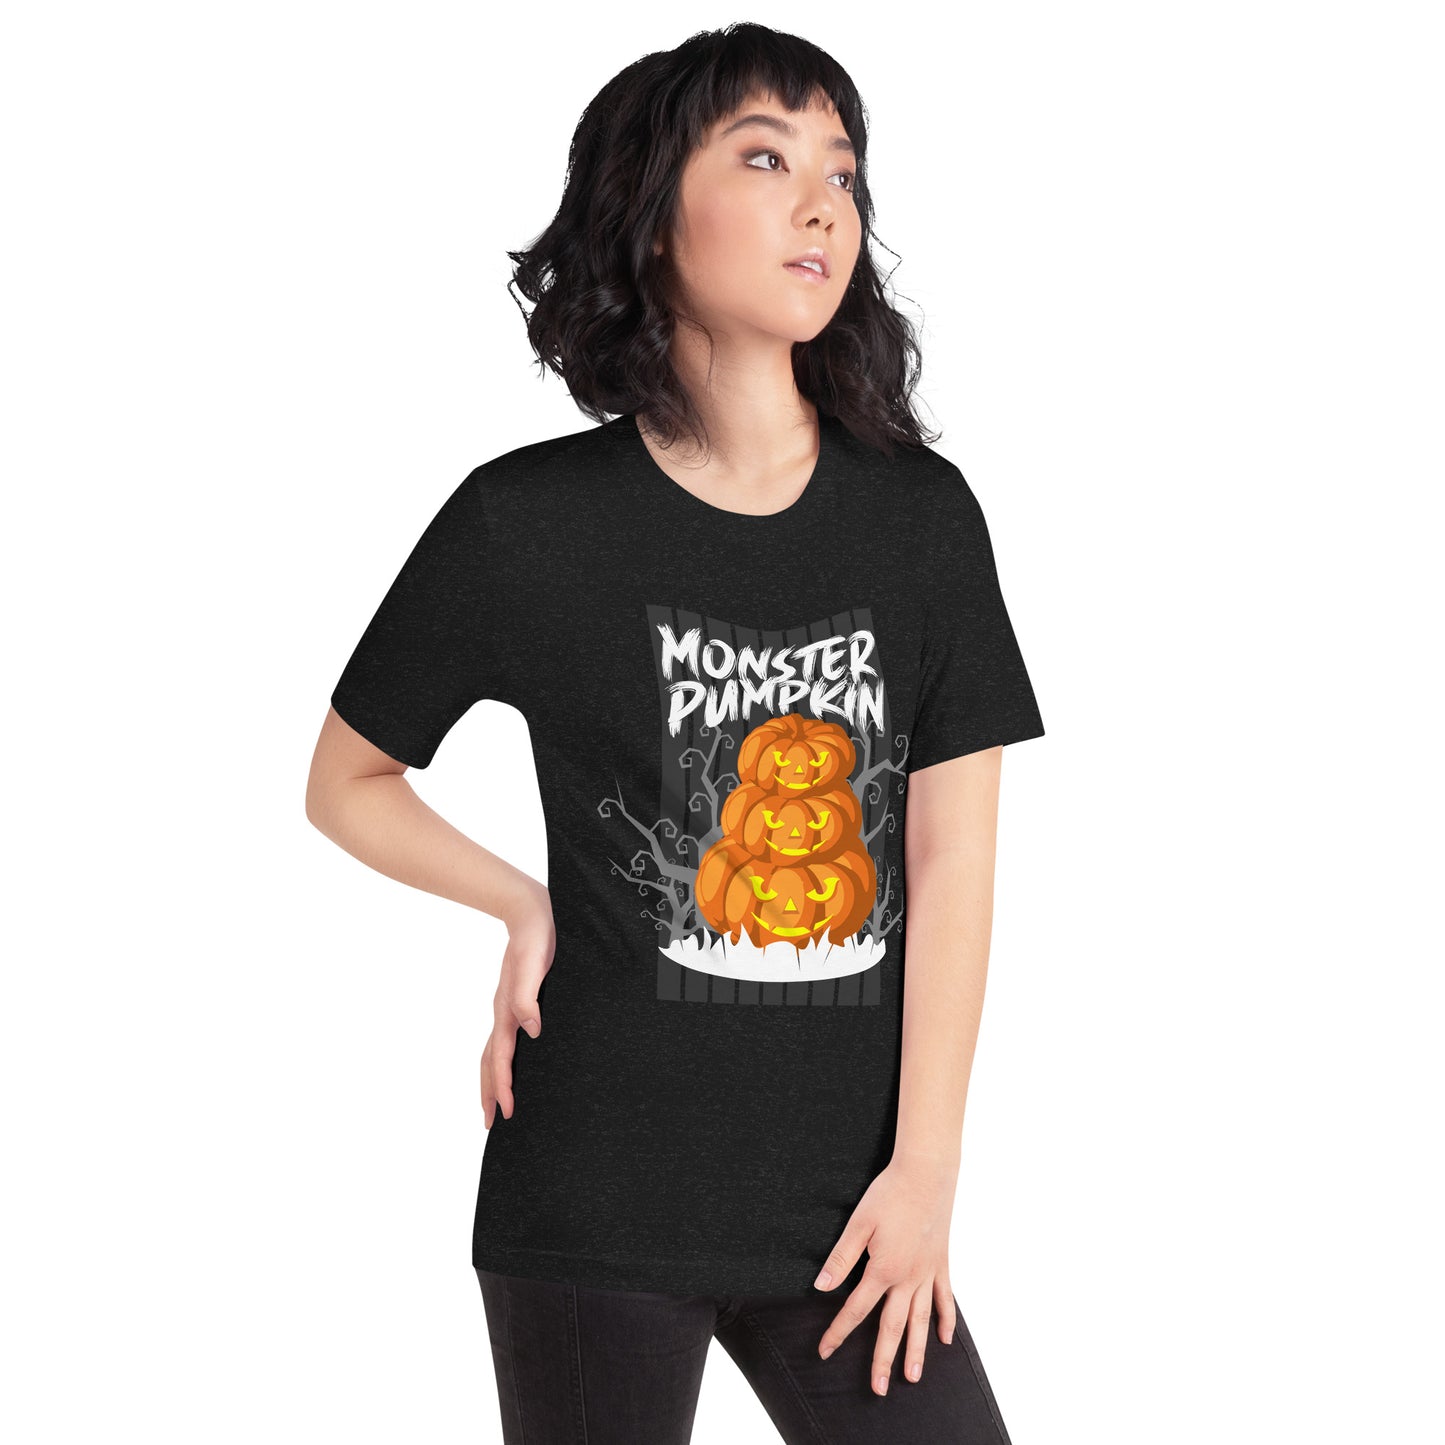 Monster Pumpkin tee